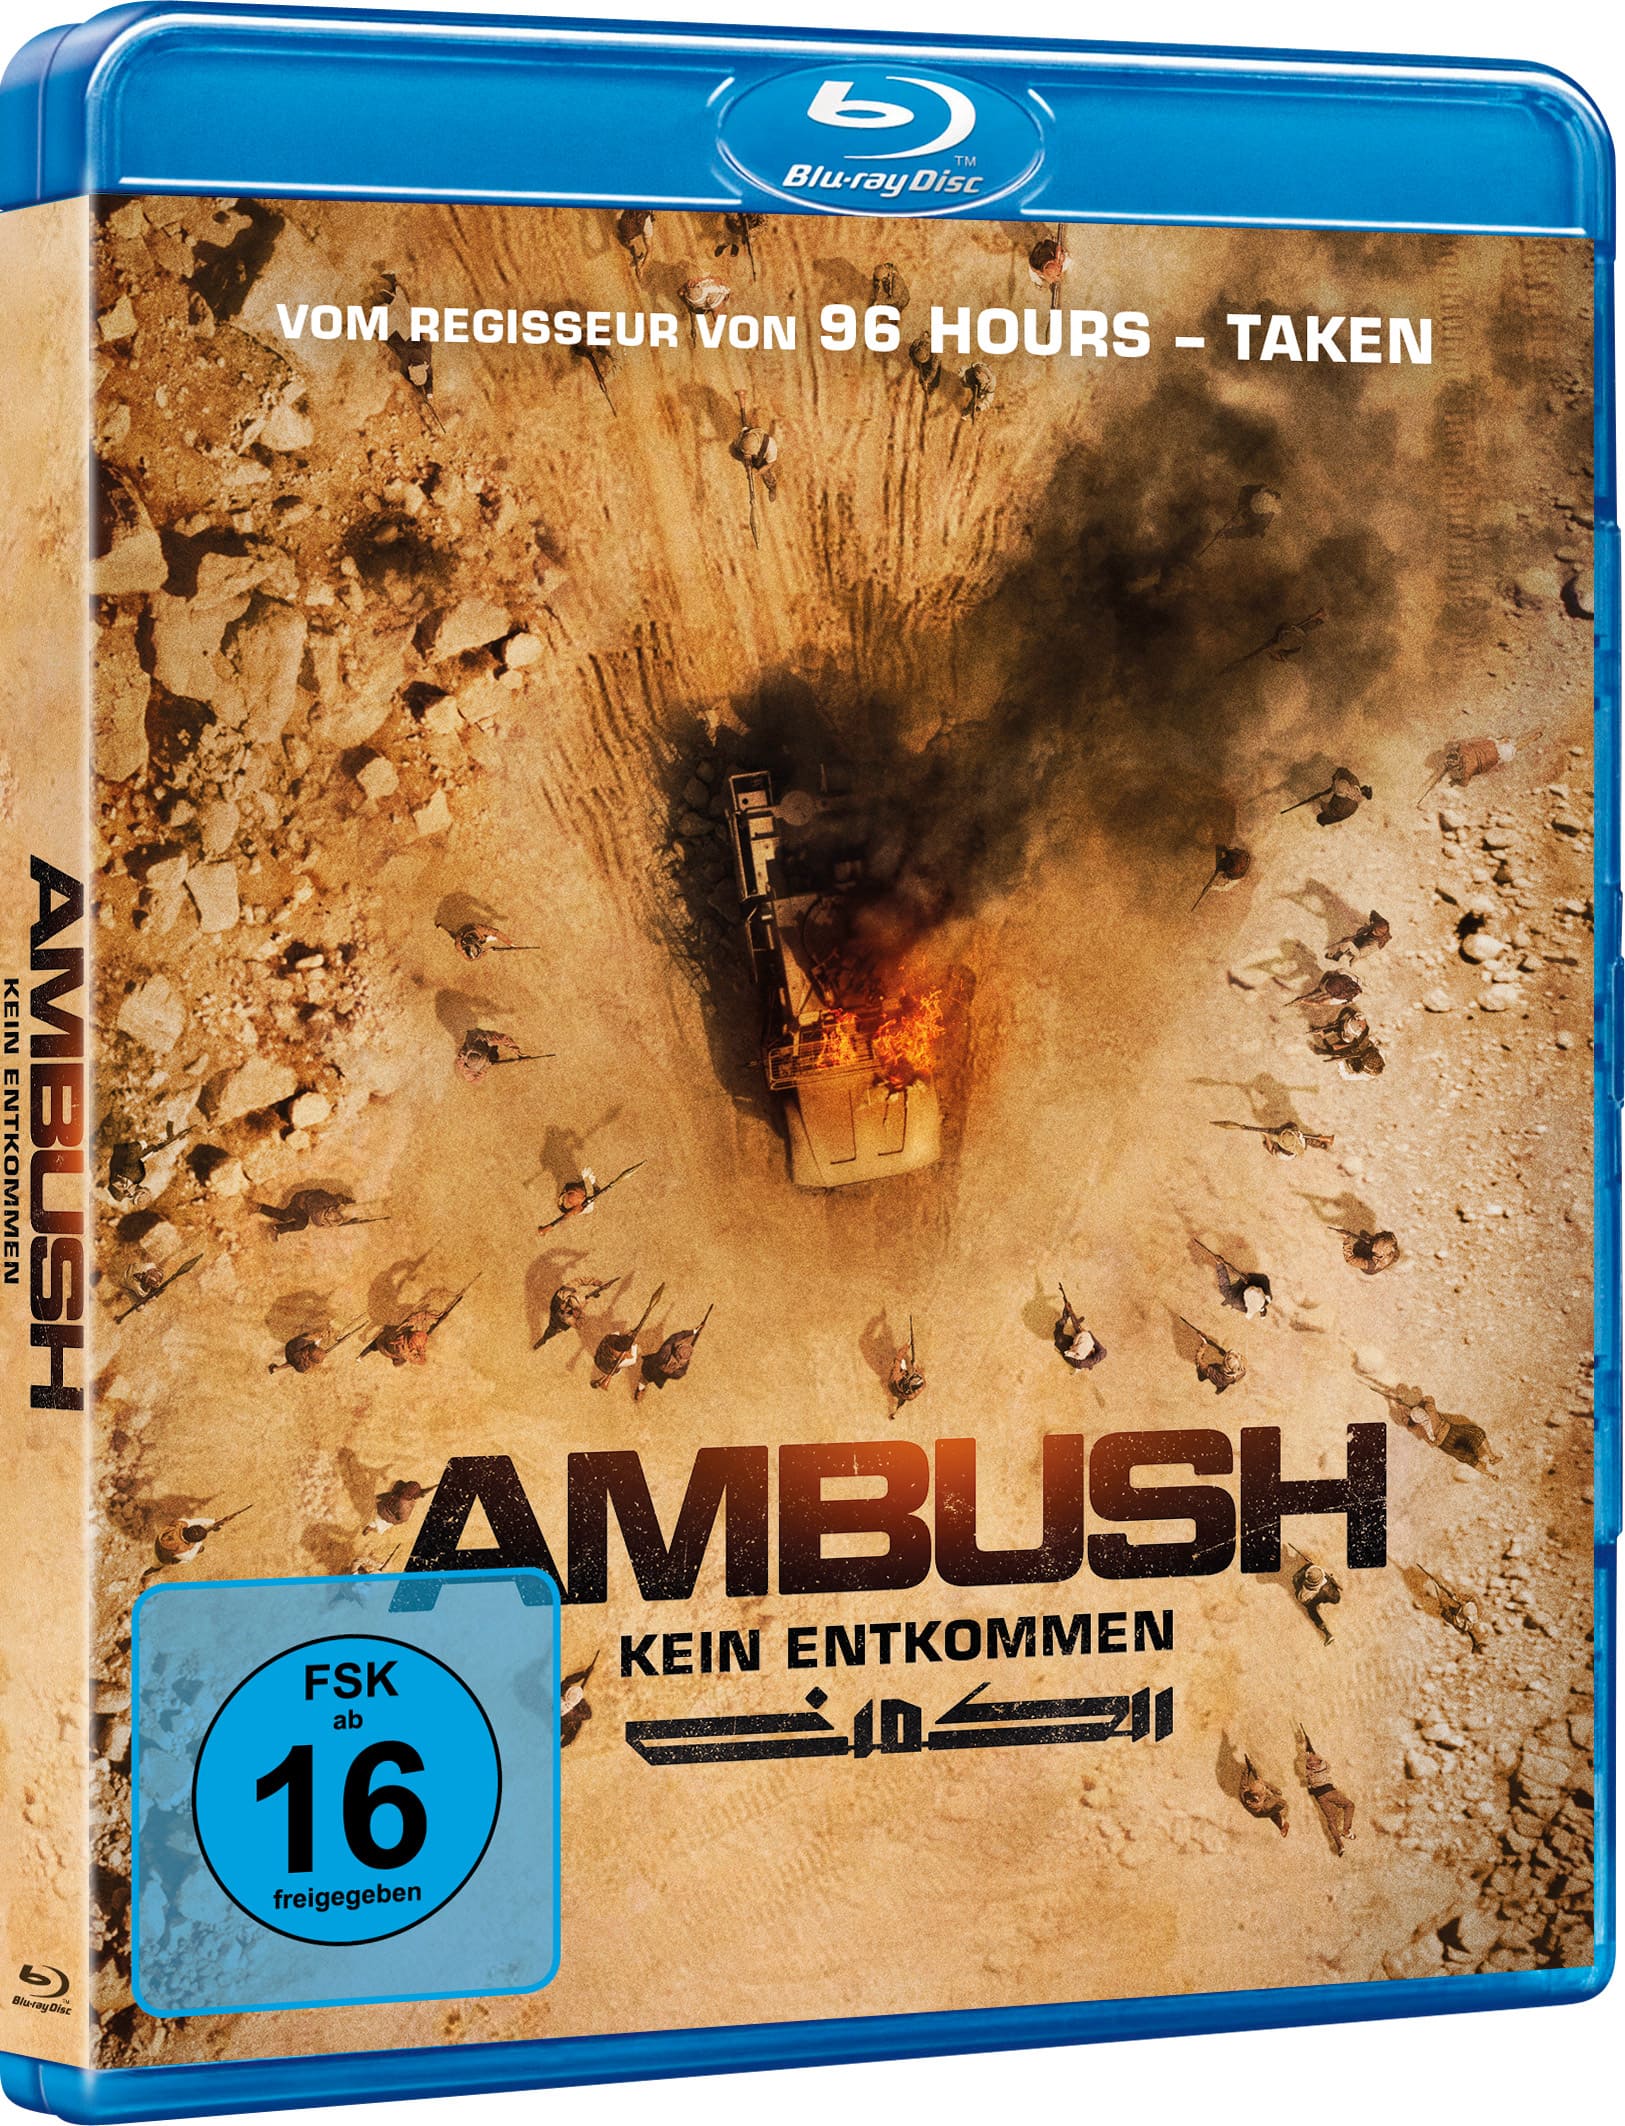 Ambush - Kein Entkommen (Blu-ray) Image 2